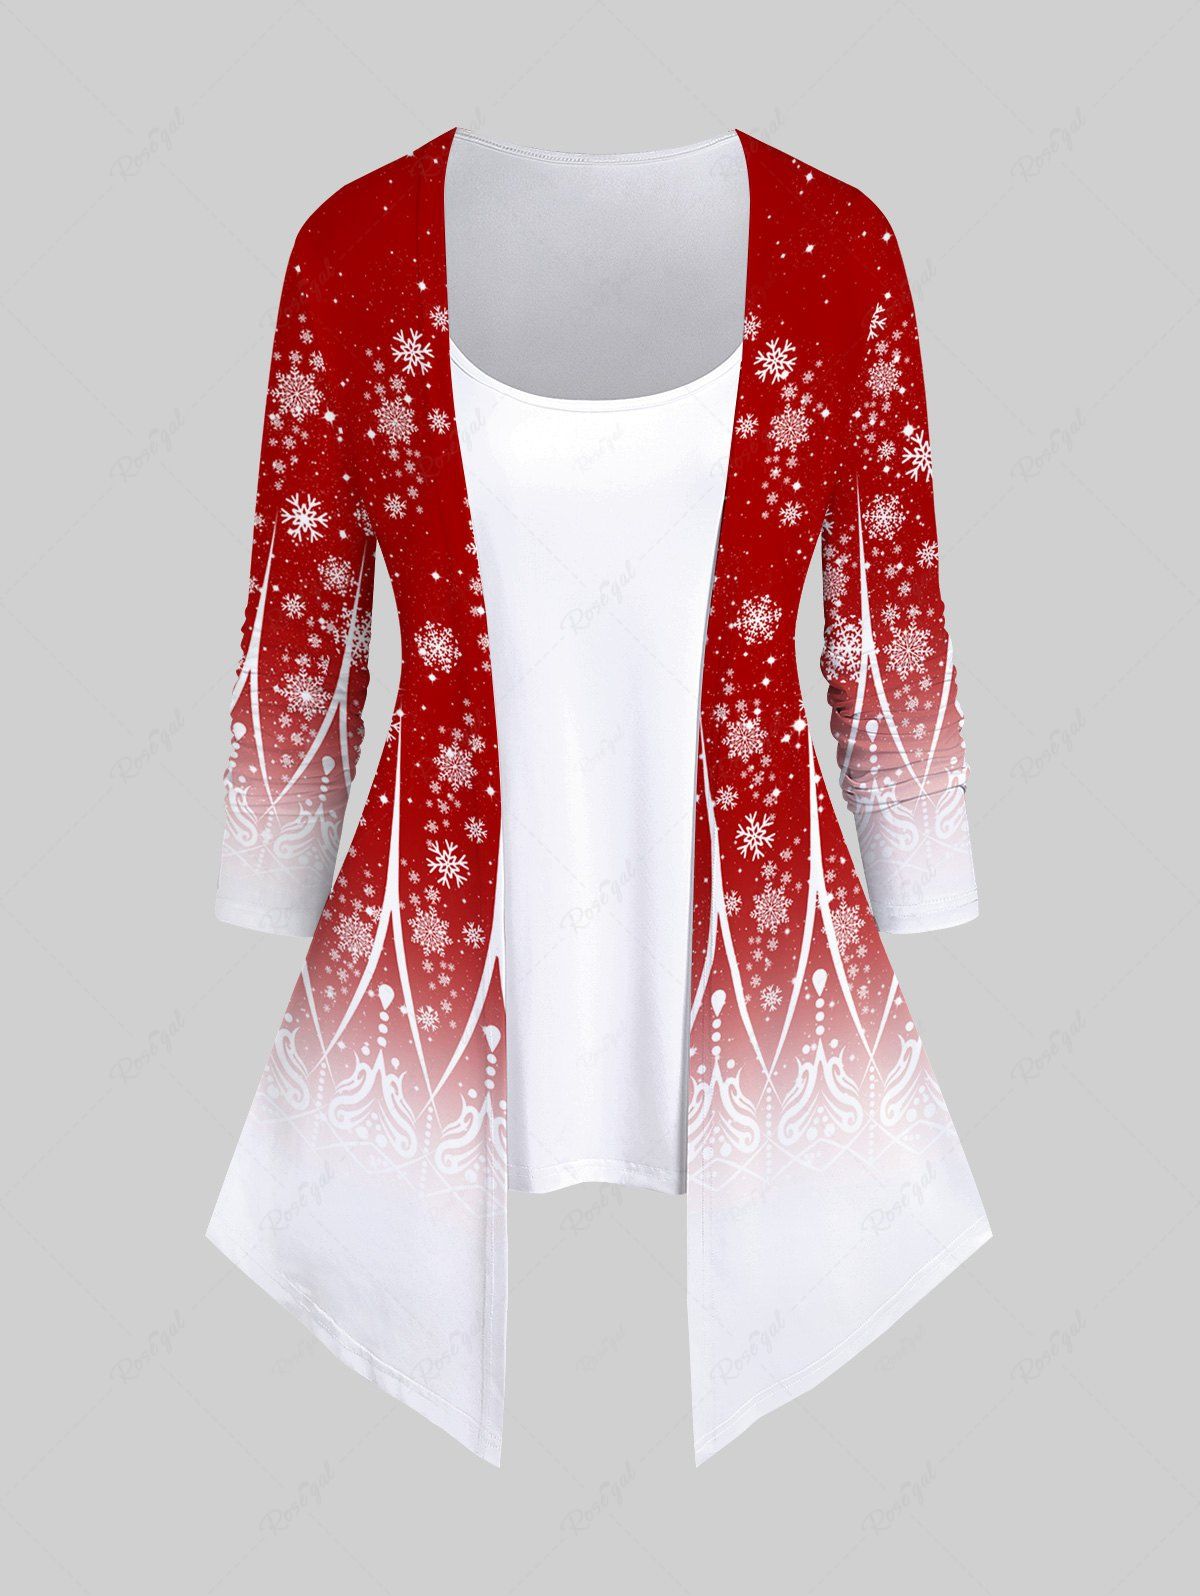 T-shirt Imprimé Figure Floral Entrecroisé Grande Taille Rouge 4X